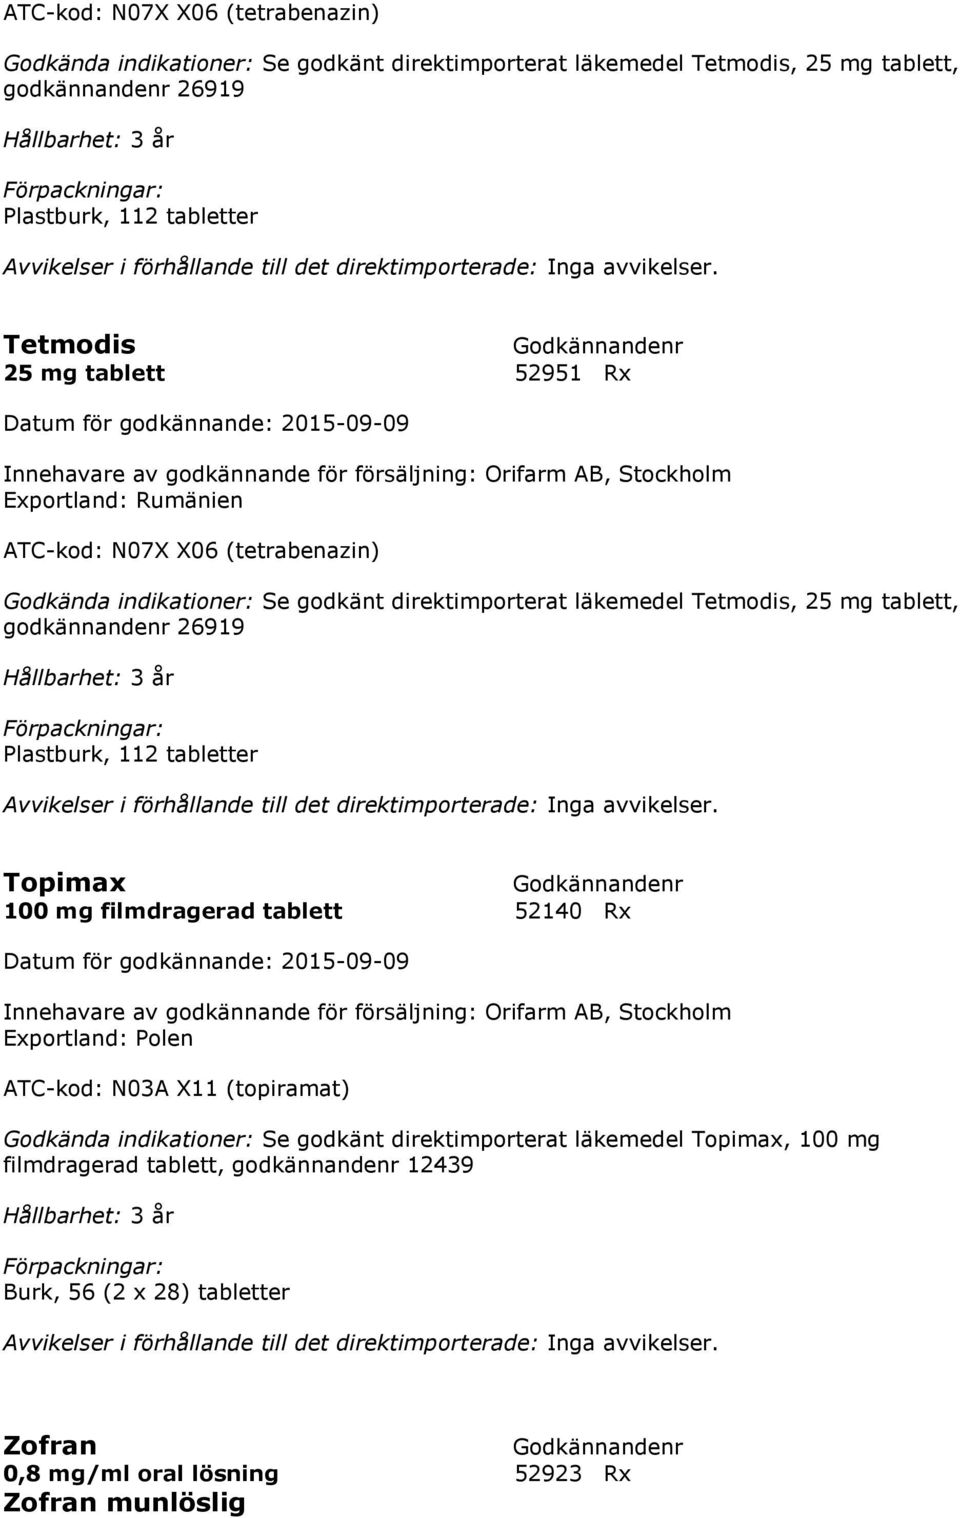 Topimax 100 mg filmdragerad tablett 52140 Rx Innehavare av godkännande för försäljning: Orifarm AB, Stockholm Exportland: Polen ATC-kod: N03A X11 (topiramat) Godkända indikationer: Se godkänt